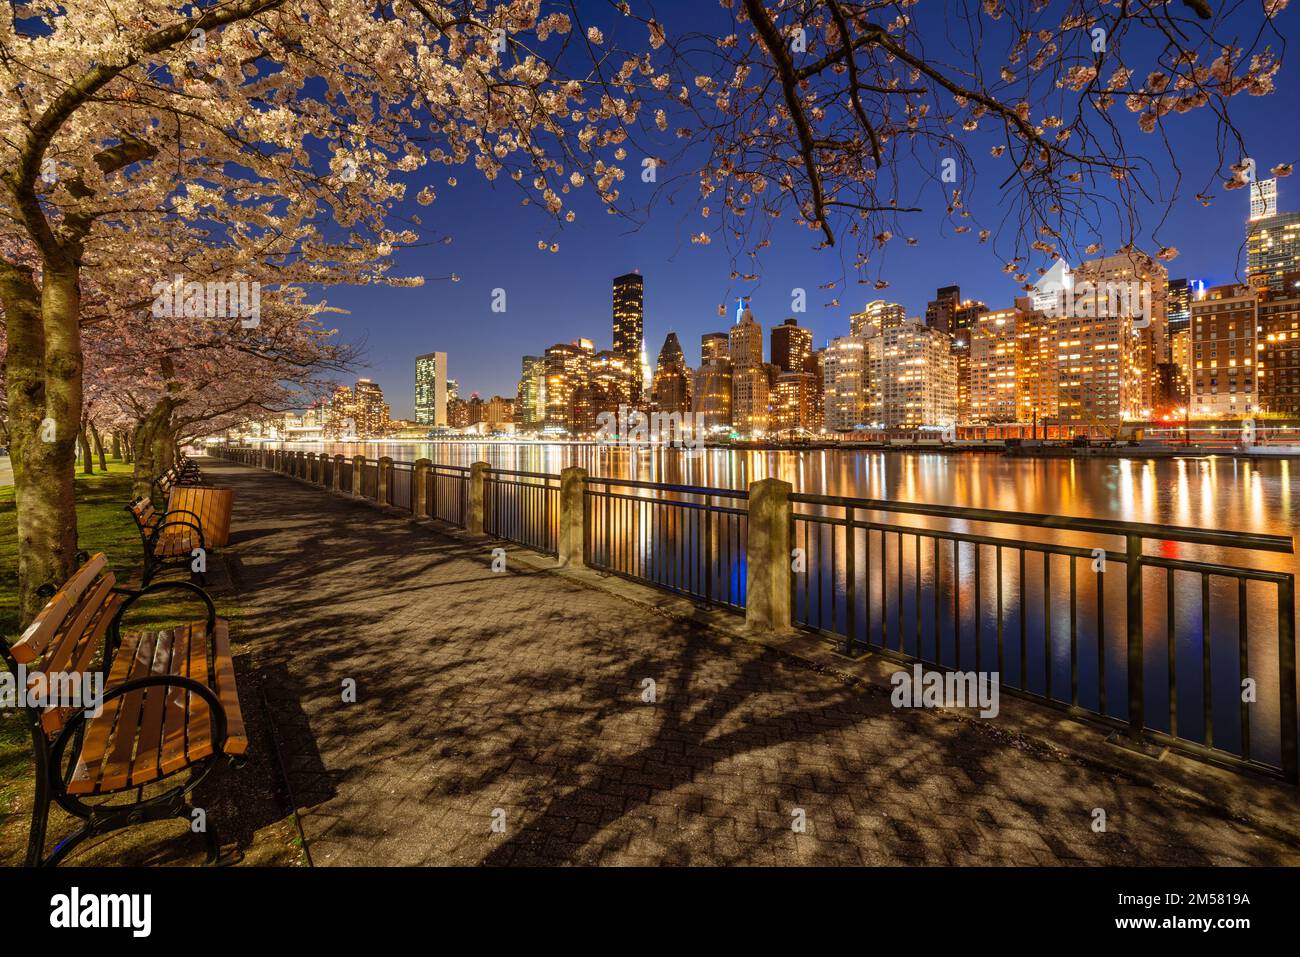 Soirée de printemps sur la promenade de Roosevelt Island avec des cerisiers en fleurs. Vue sur les gratte-ciels Midtown East et East River de Manhattan. New York Banque D'Images